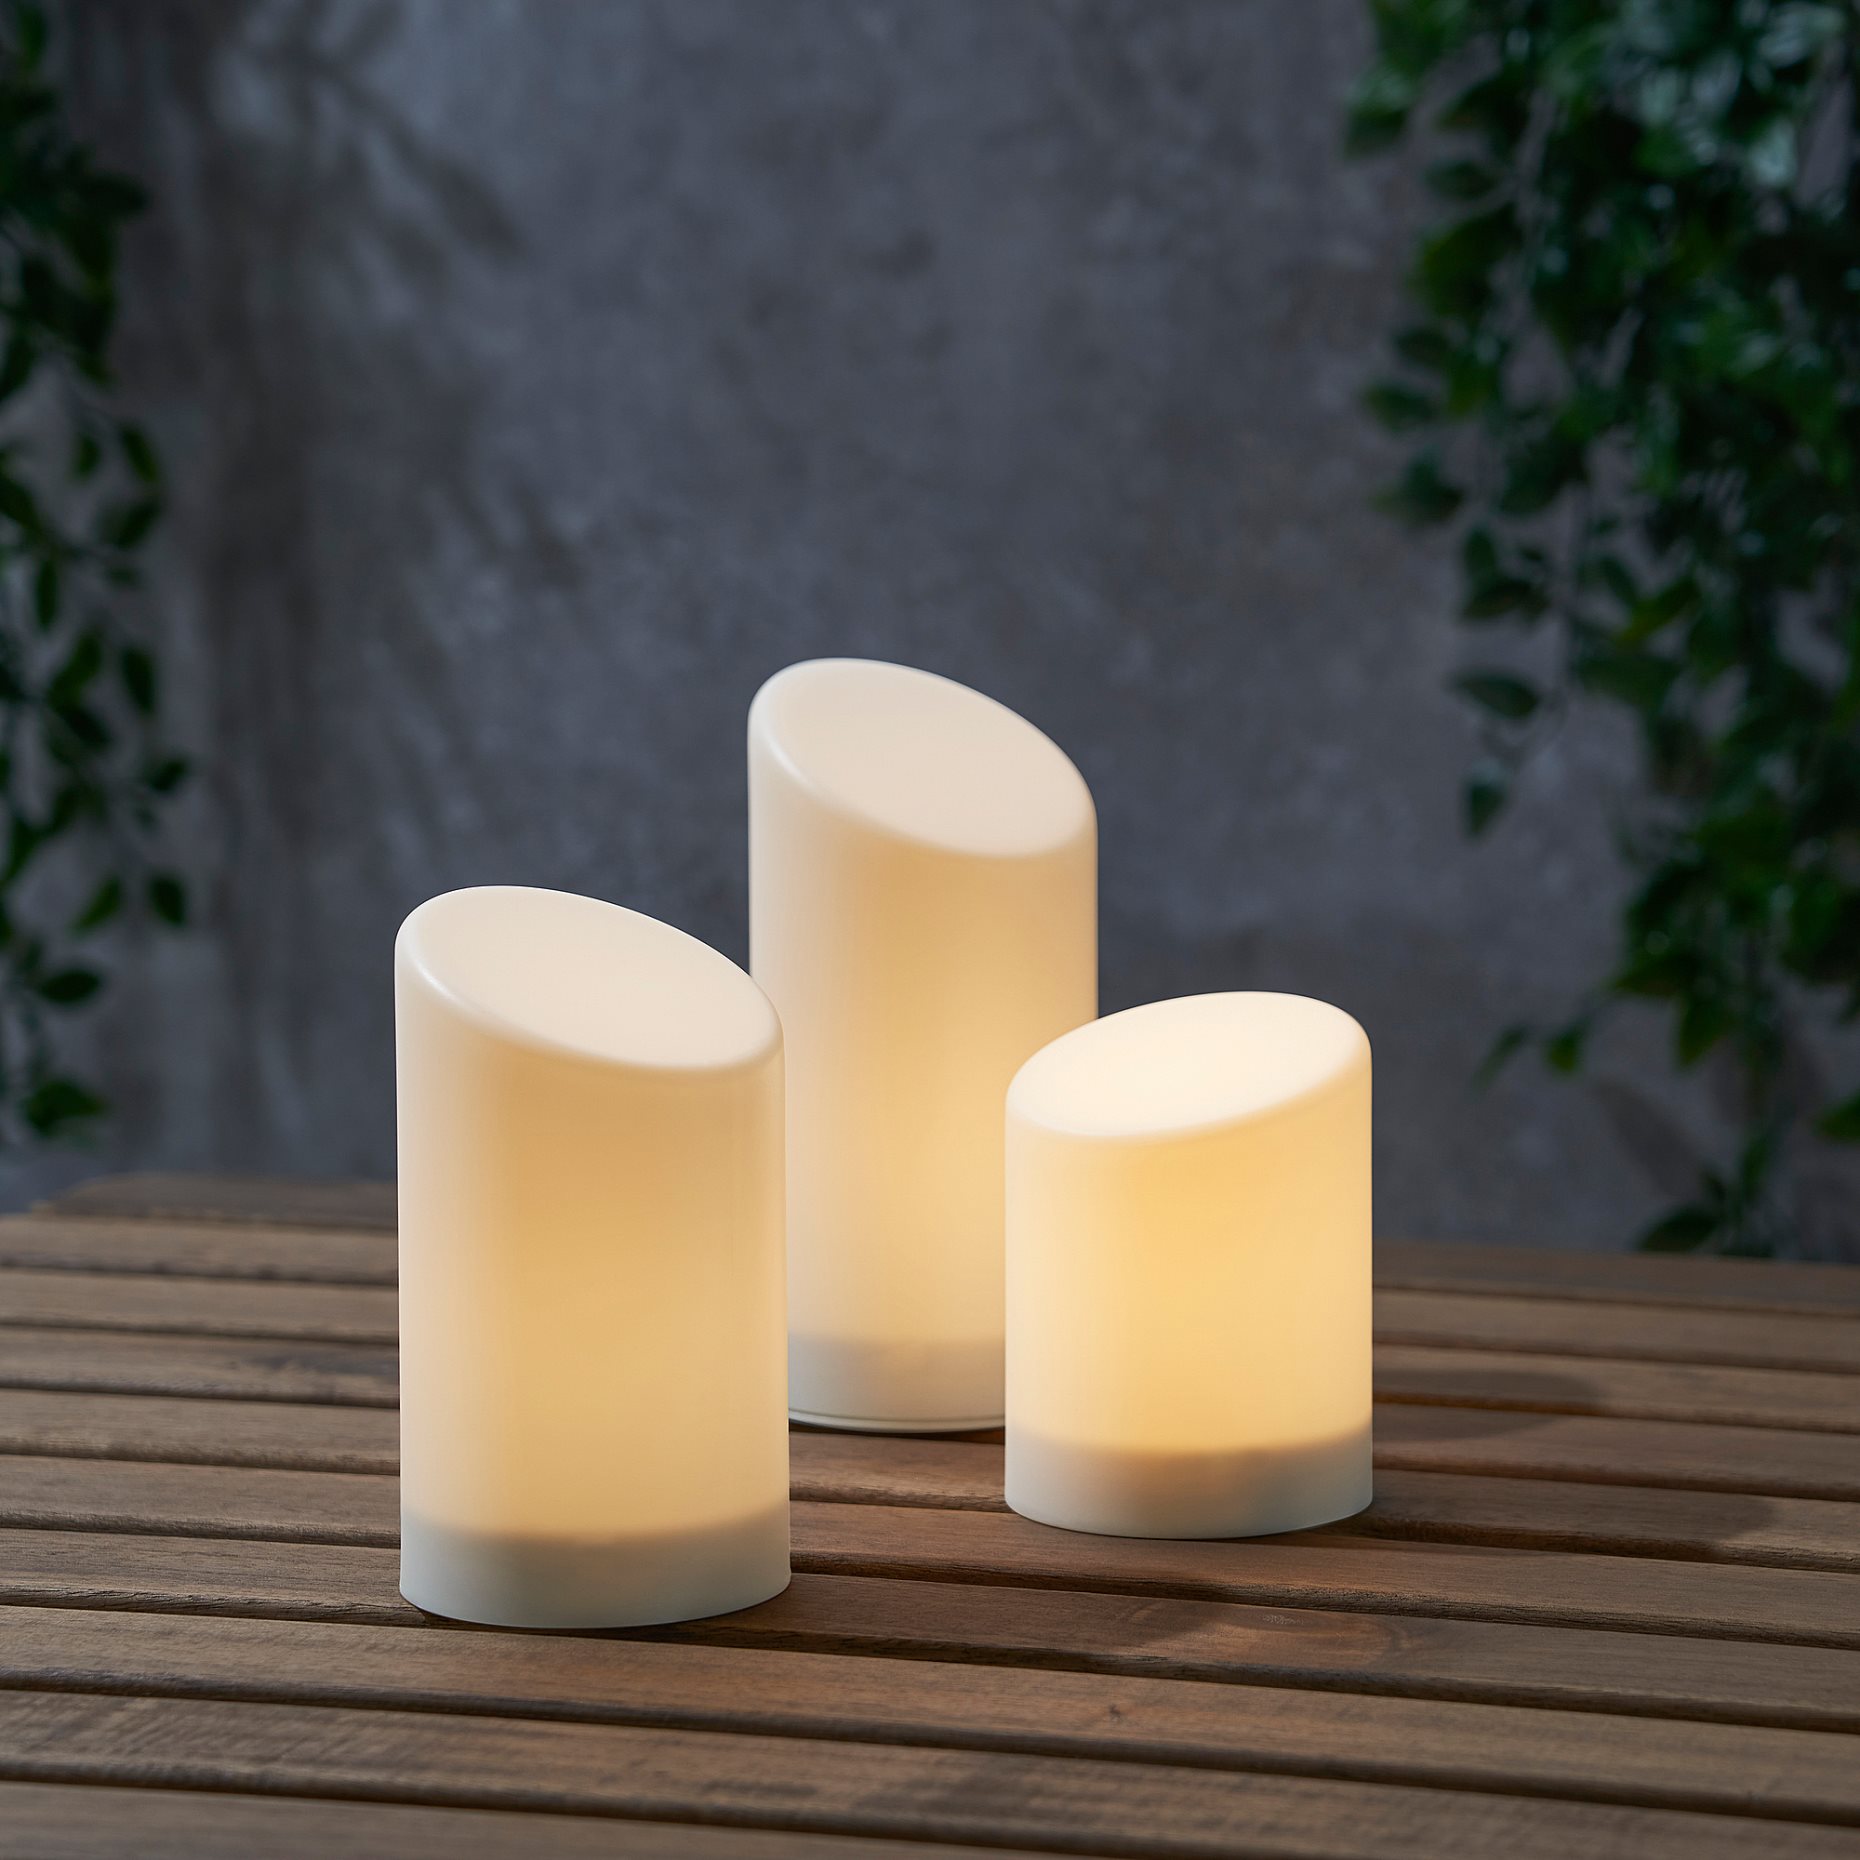 ÄDELLÖVSKOG, block candle with built-in LED light source in/out, set of 3, 105.202.55